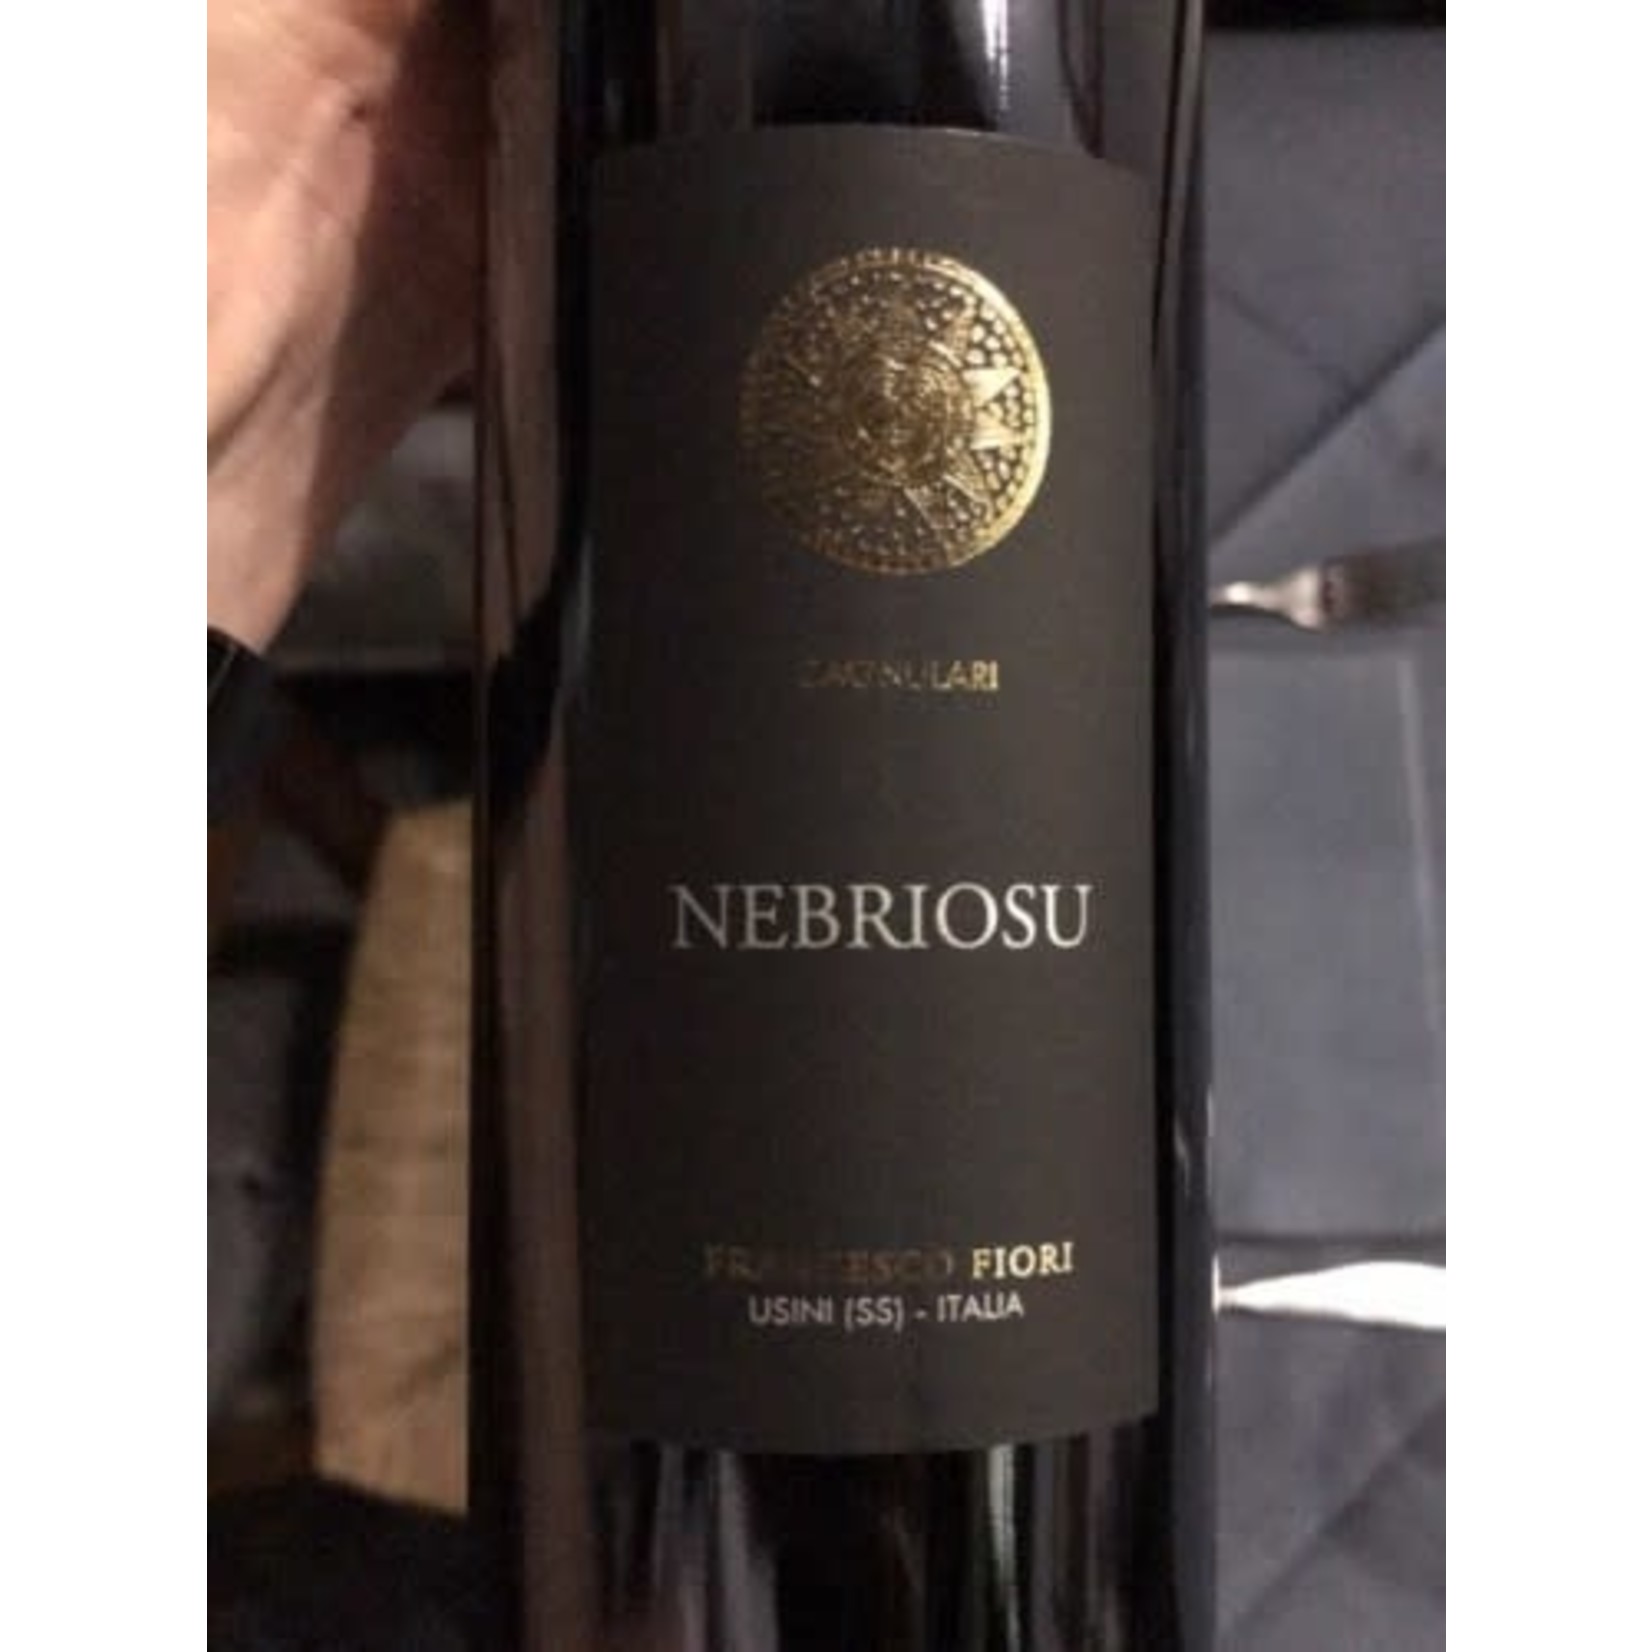 Wine Francesco Fiori Cagnulari Nebriosu